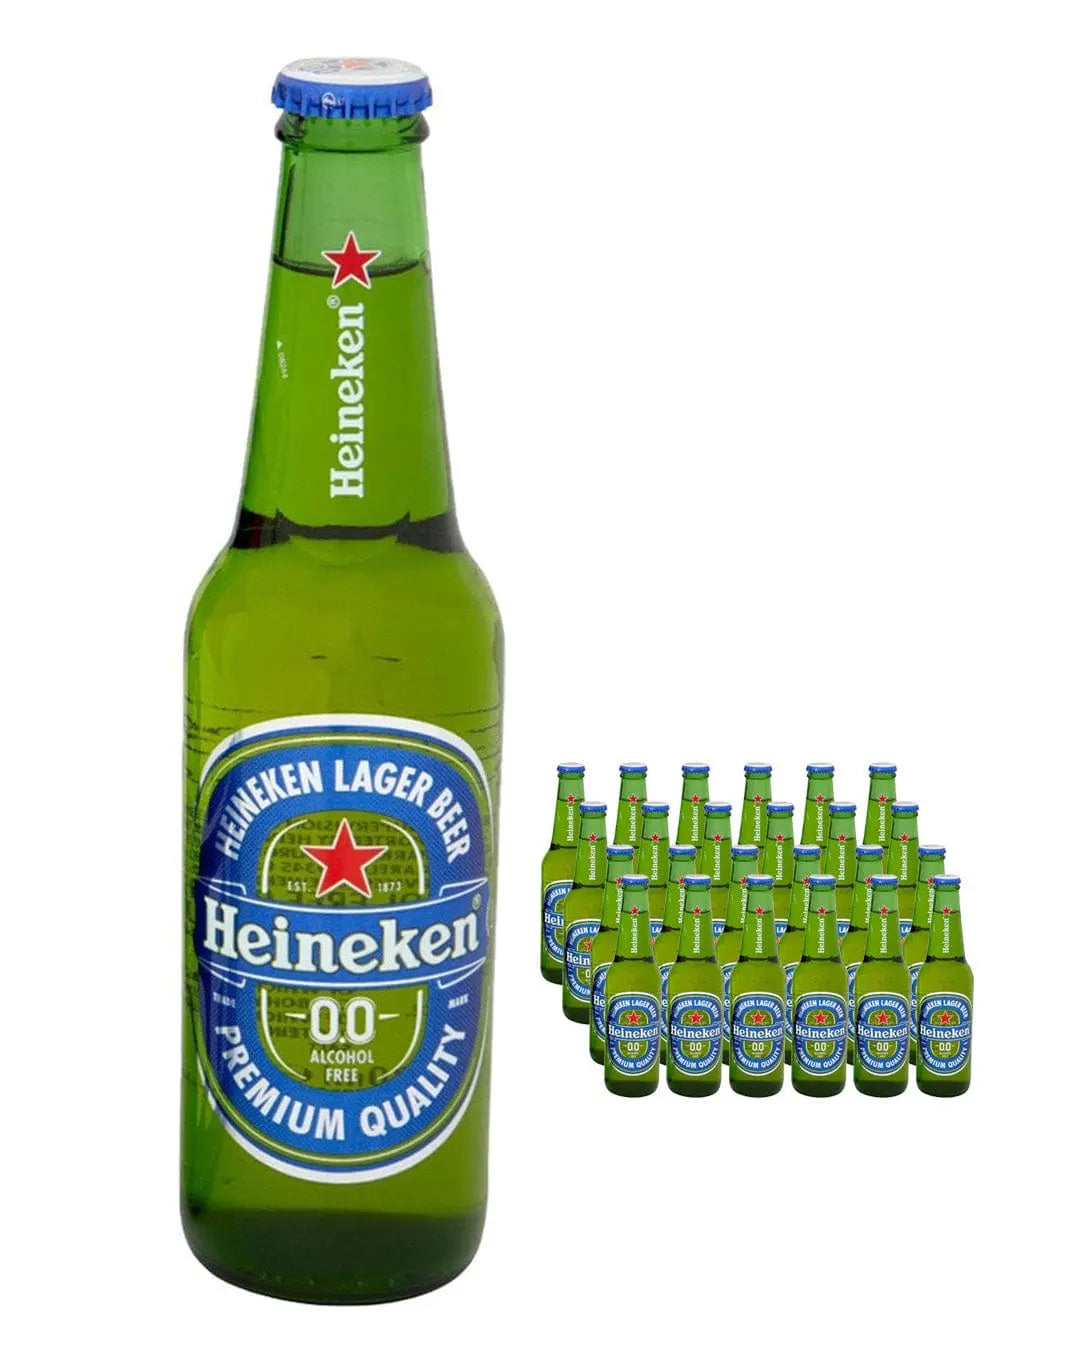 Heineken 0.0% Alcohol Free Beer Bottle Multipack, 24 x 330 ml Beer